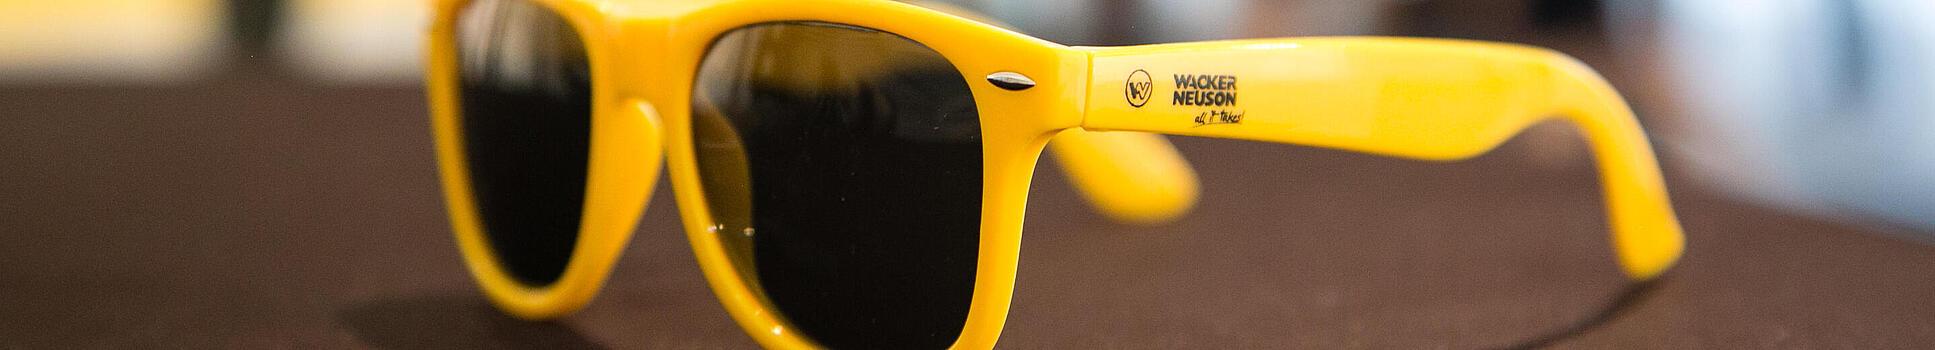 Žluté sluneční brýle s logem Wacker Neuson.